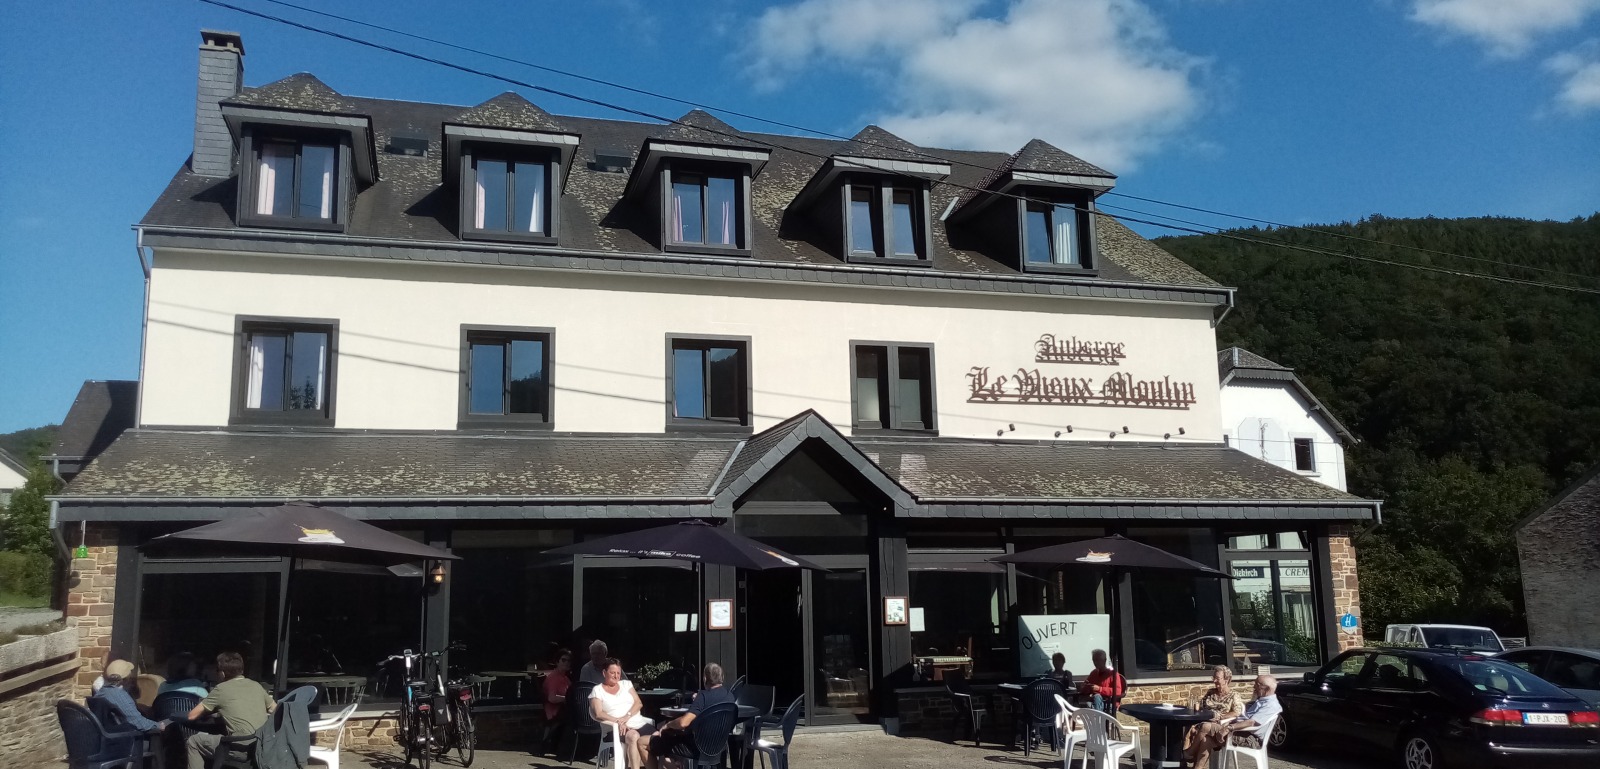 Voorgevel van L'Auberge Le Vieuw Moulin in Poupehan - Een hotel-herberg in België